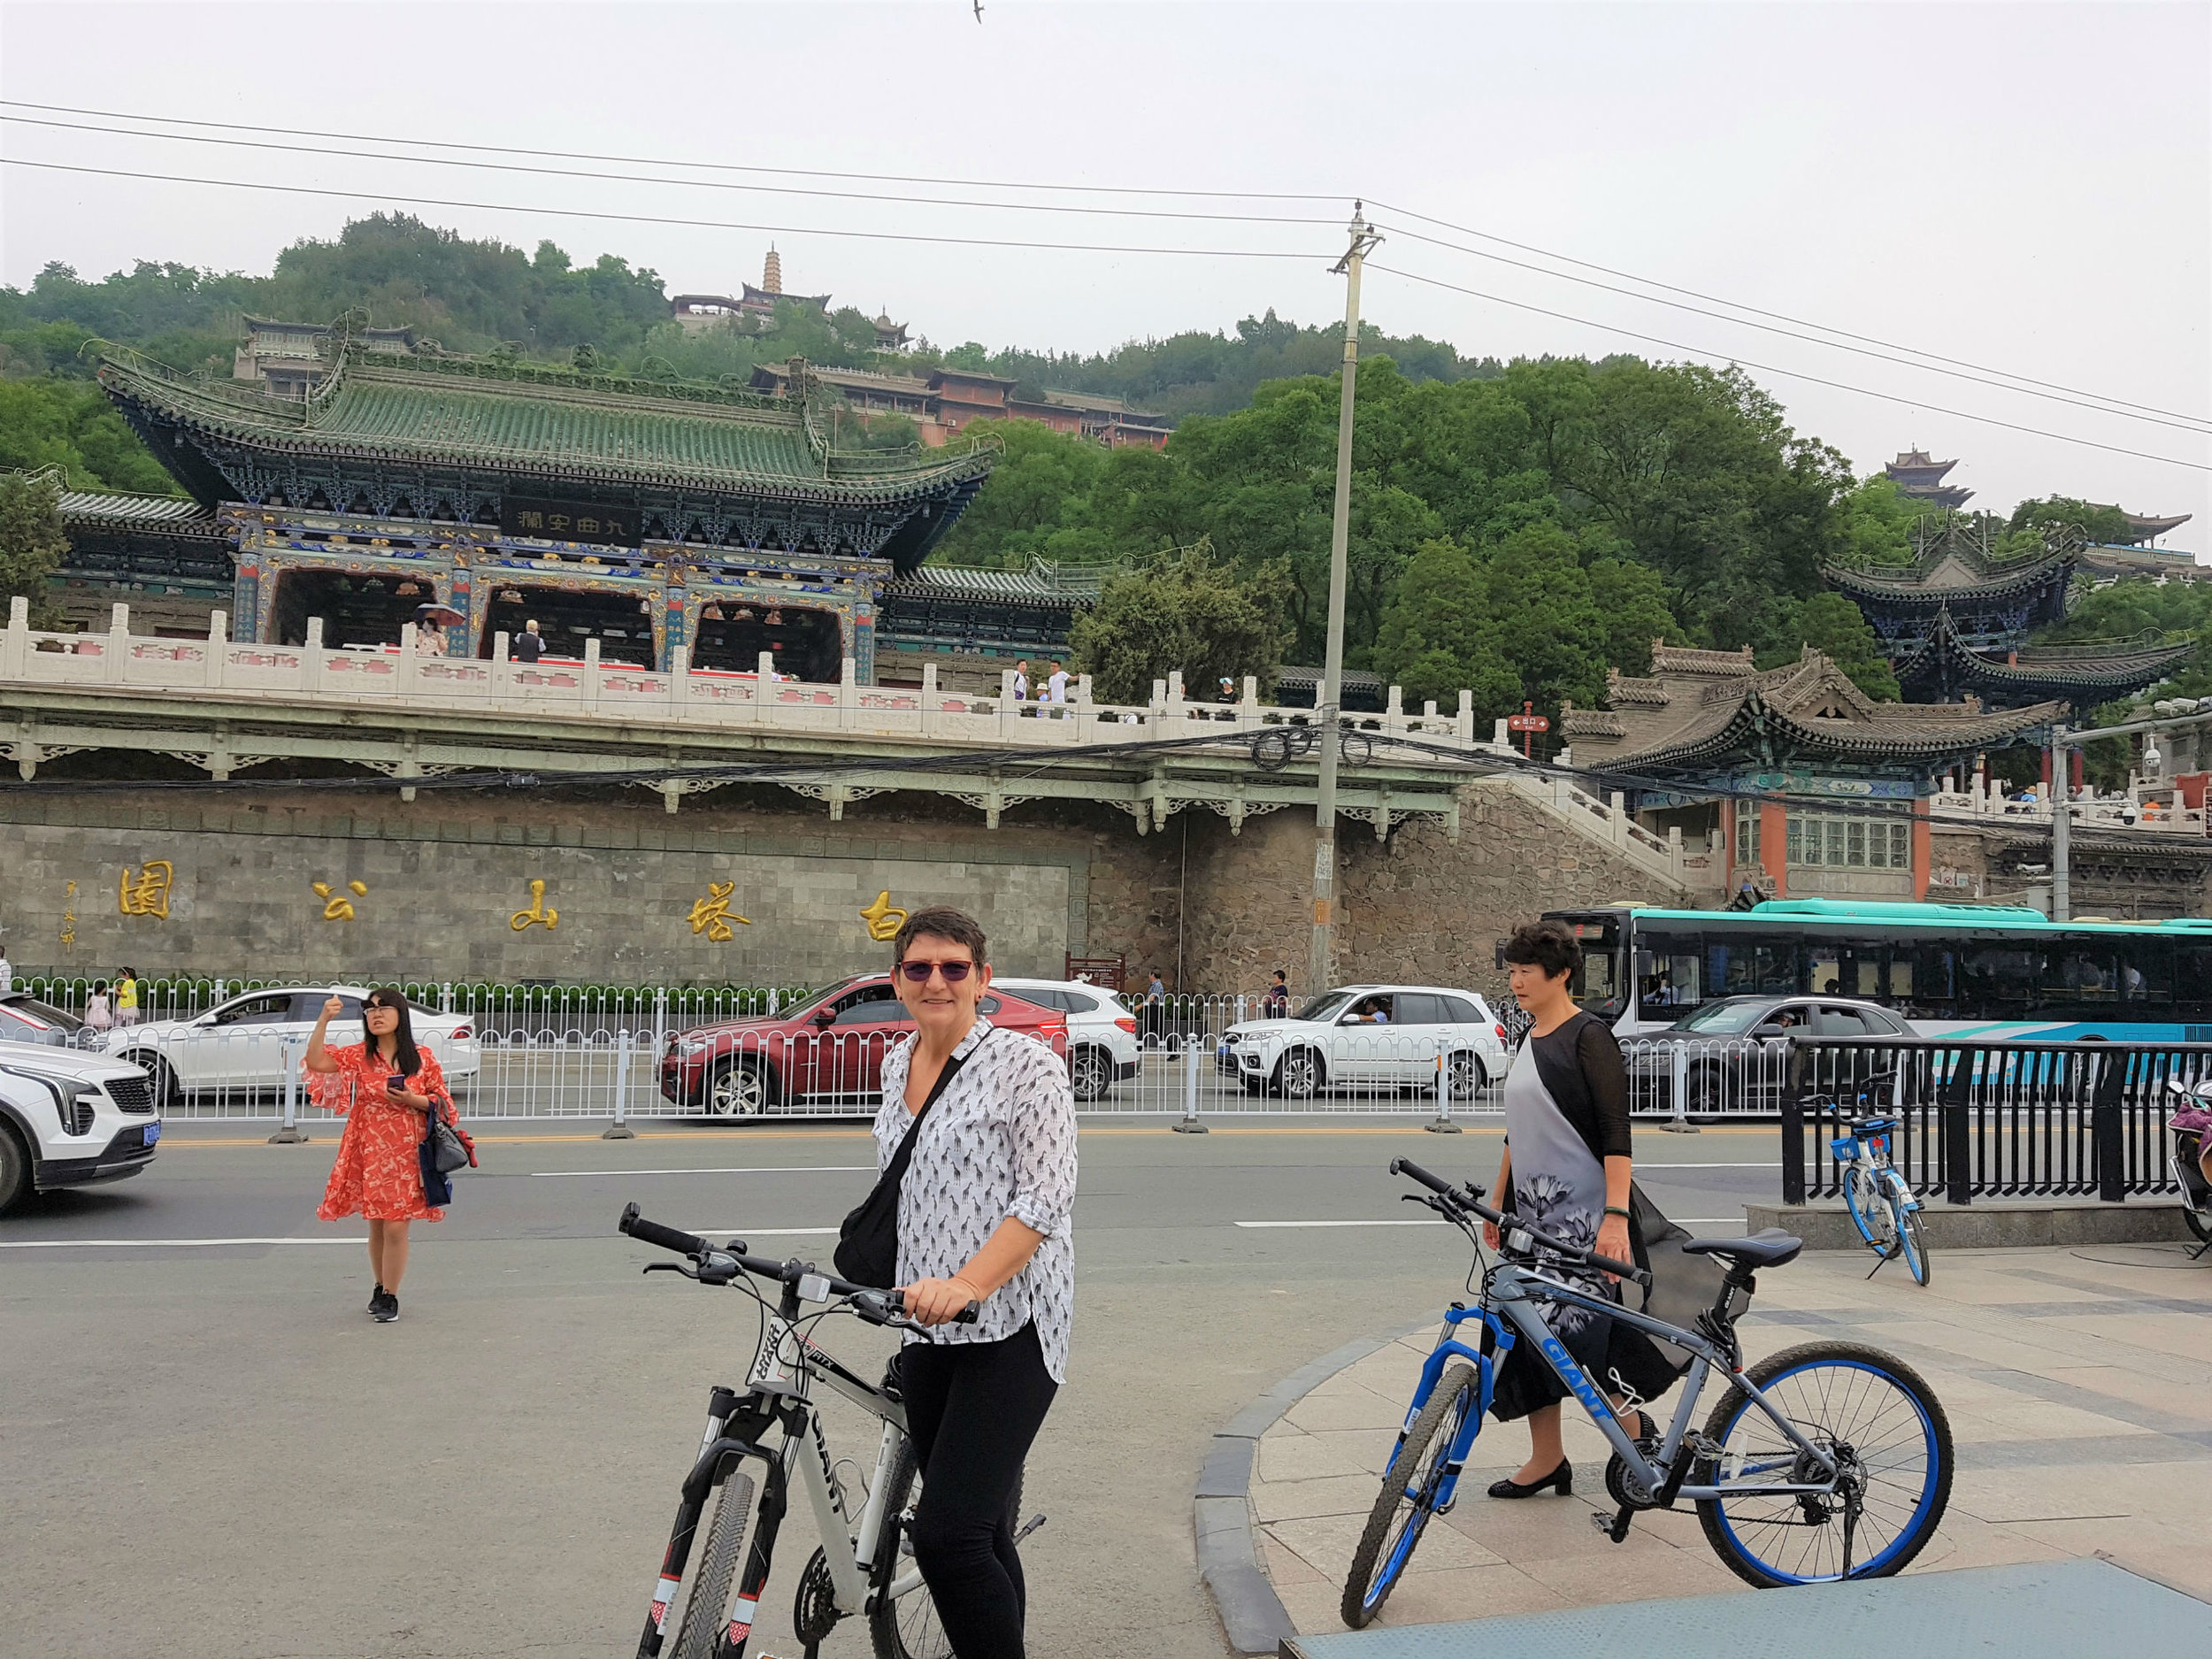 Lanzhou is a biking friendly city